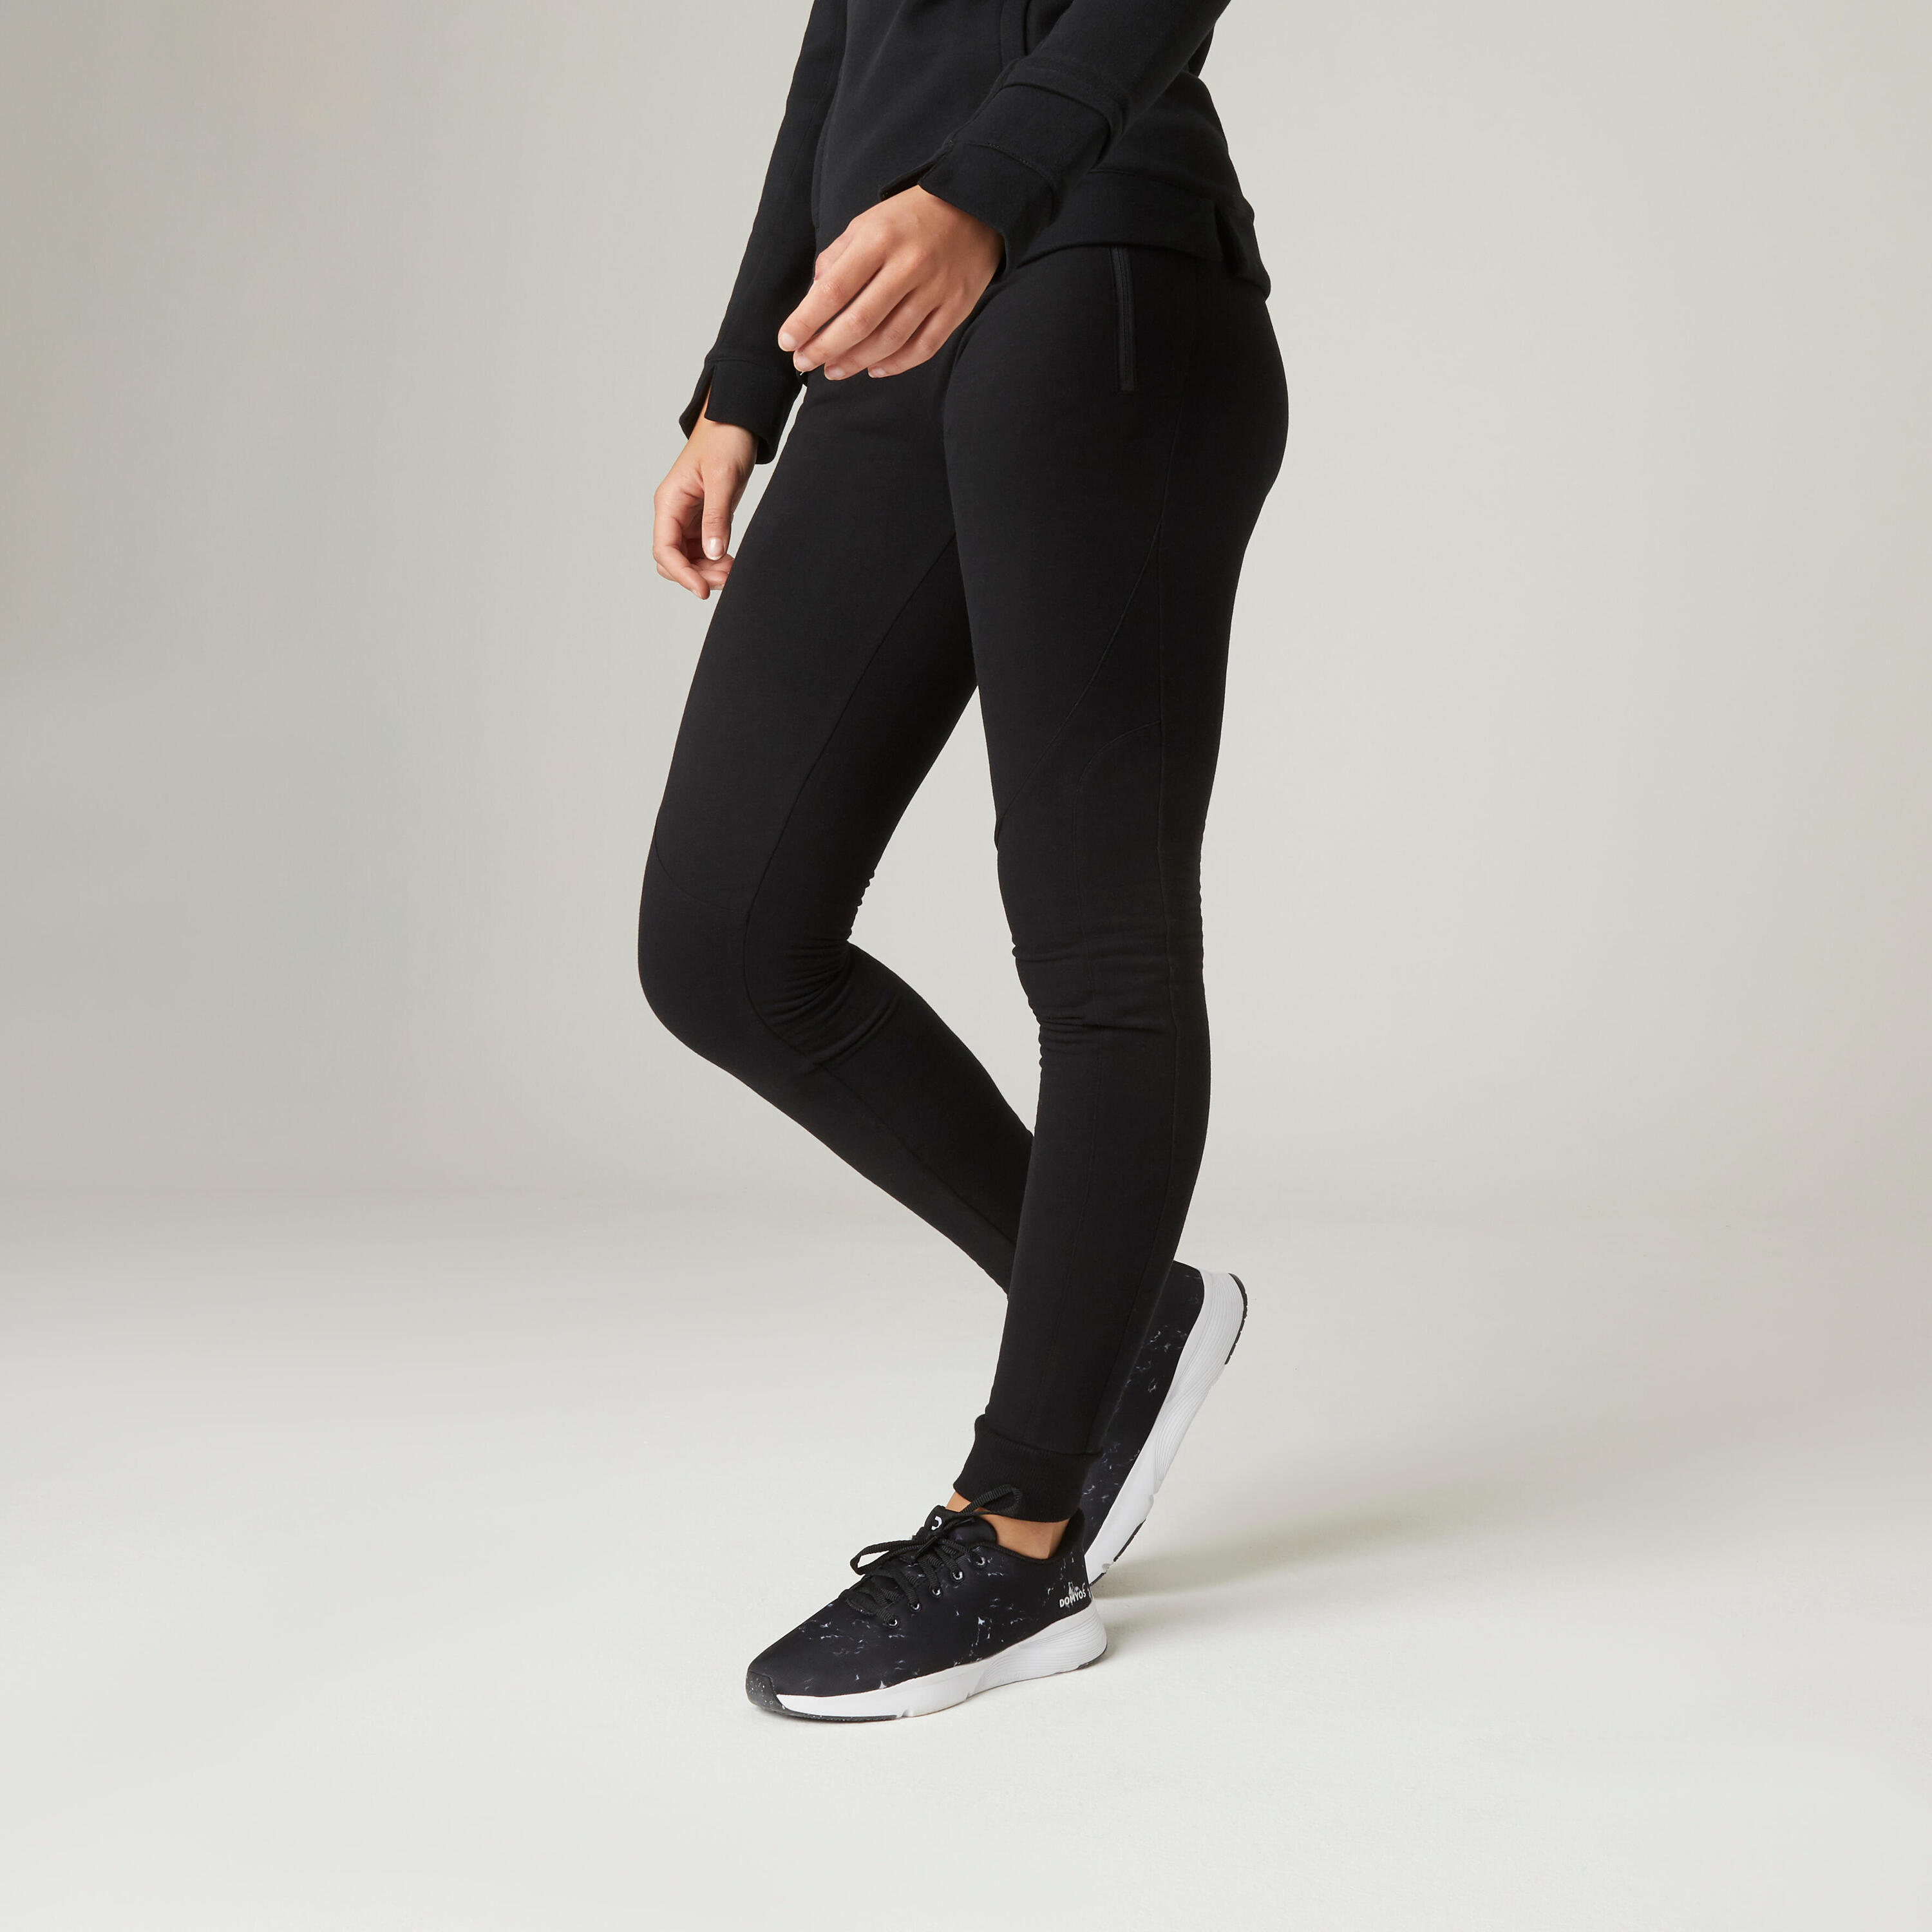 Спортивные штаны Fitness Slim - 520 женские черные DOMYOS, черный штаны domyos спортивные стильные 36 размер